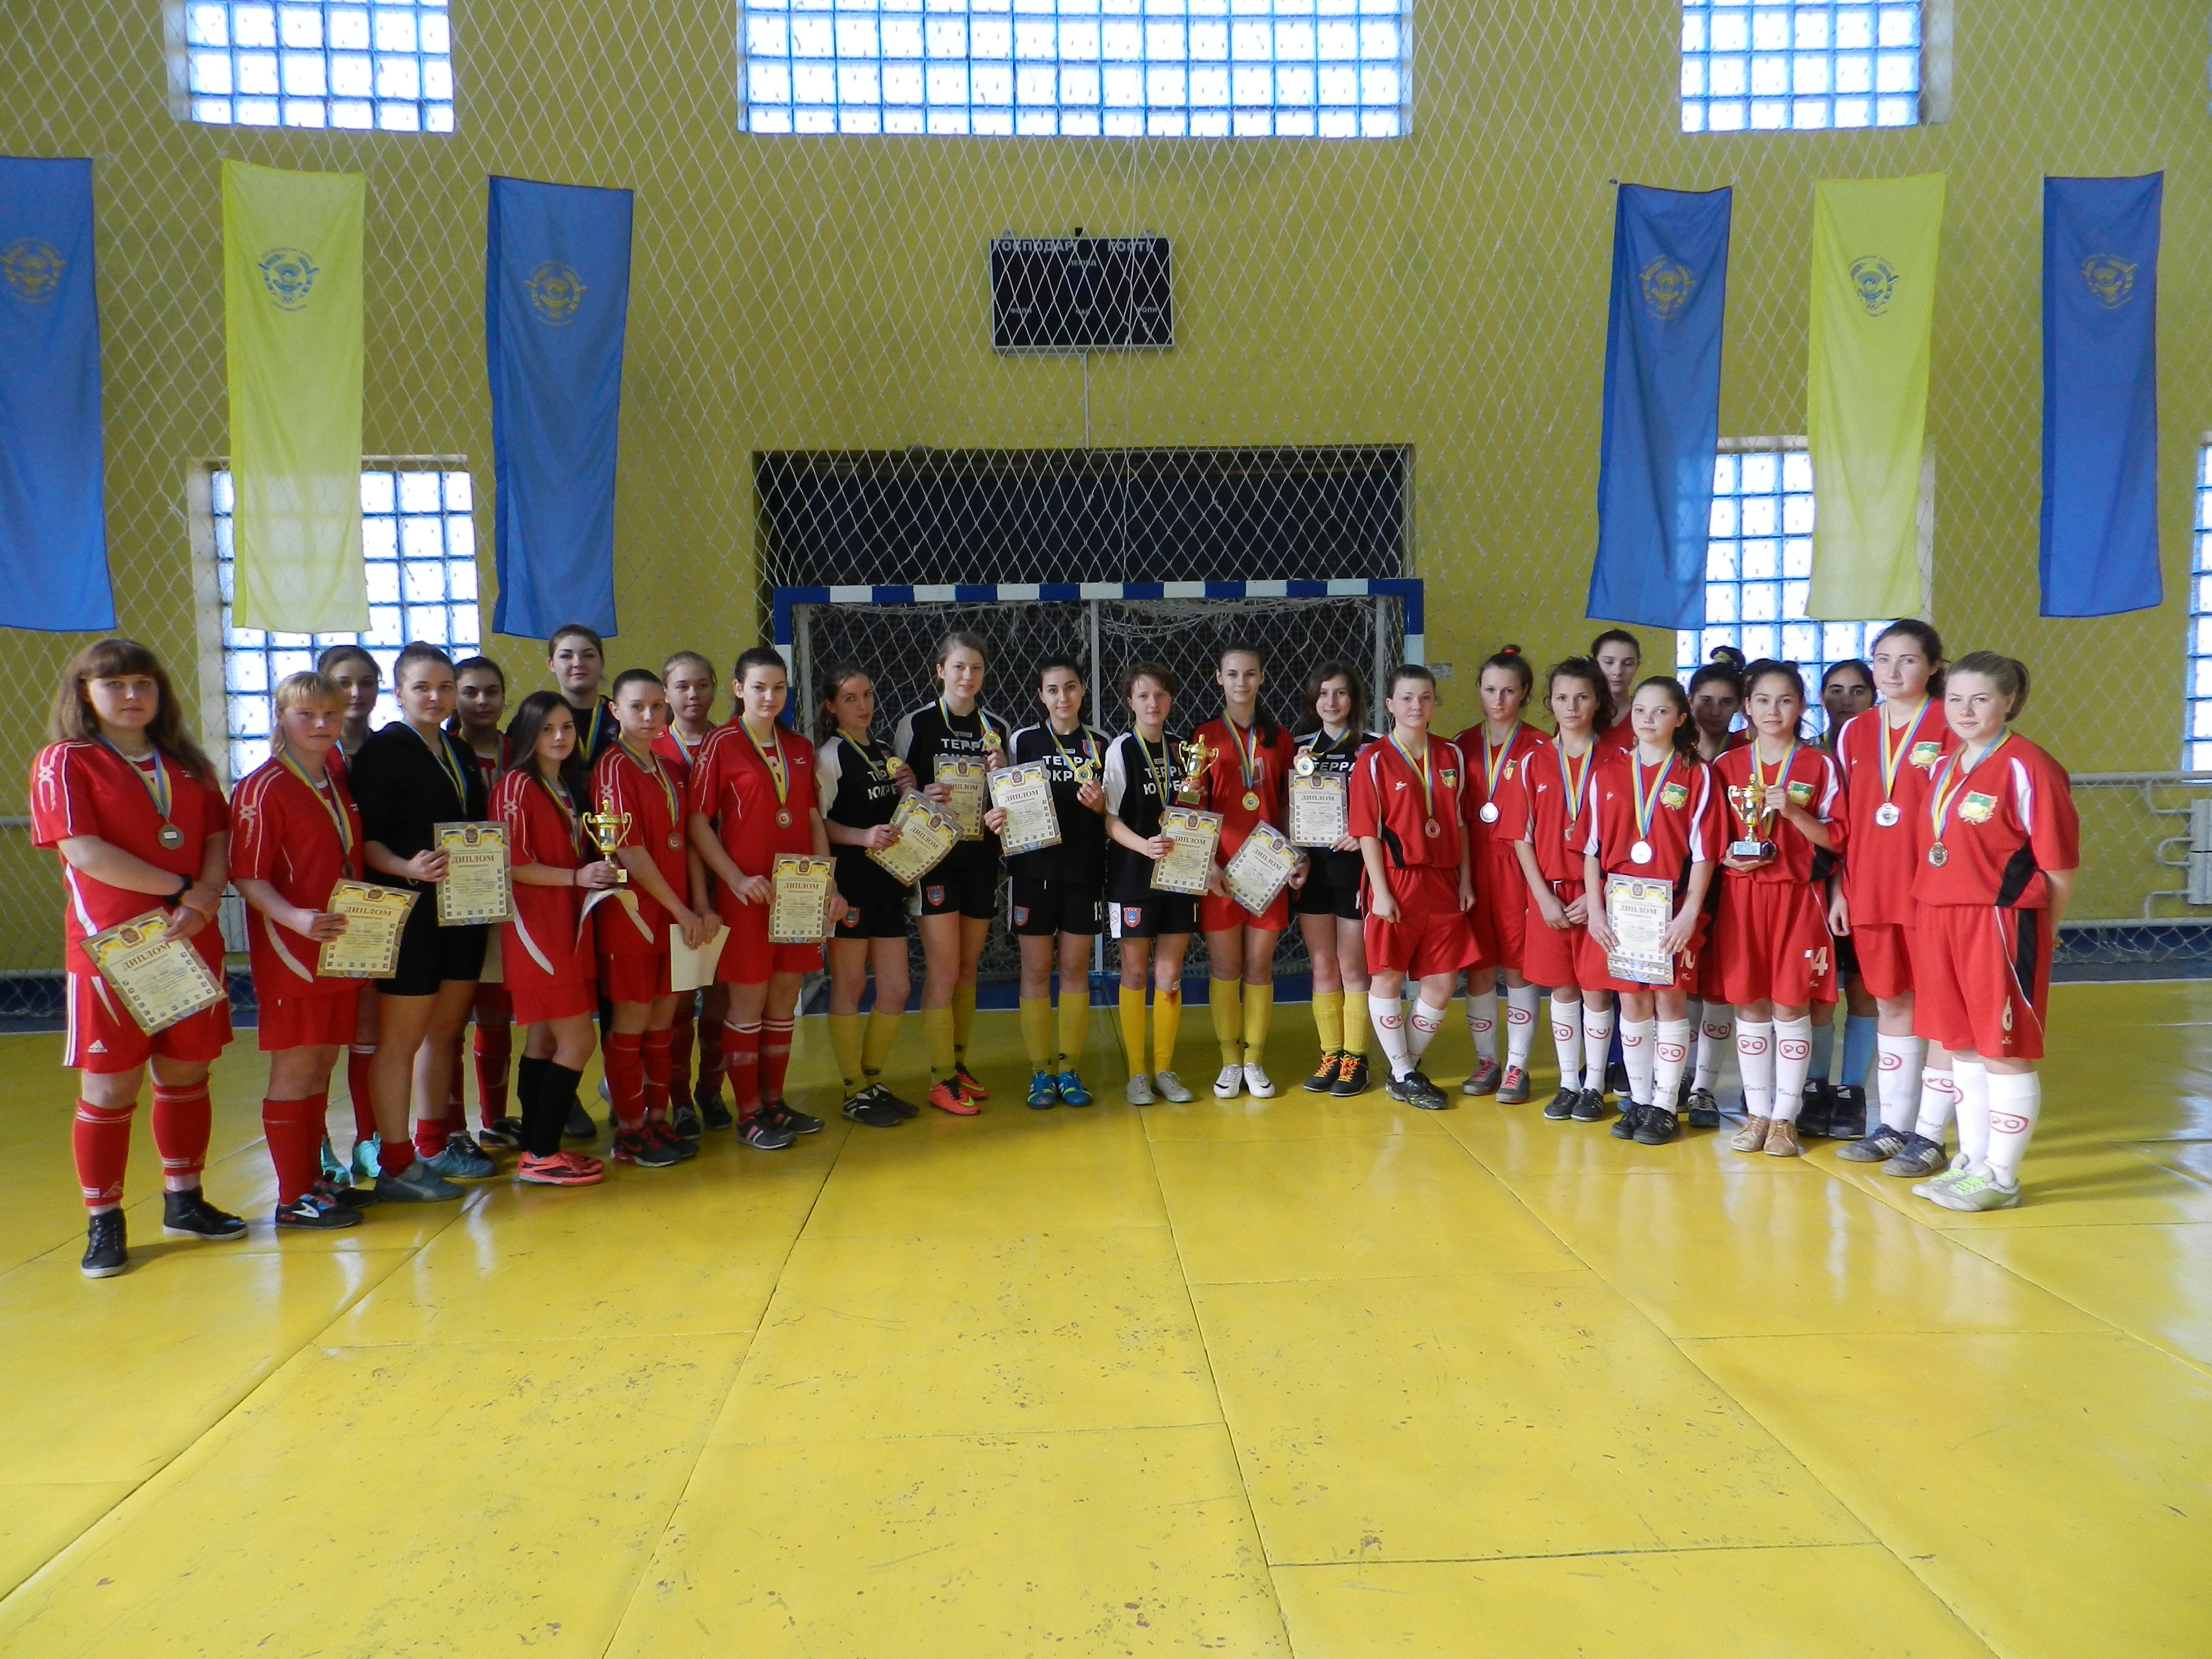 Збірна Каховки стала переможцем VІІІ літніх спортивних ігор  молоді Херсонщини 2016 року, серед збірних команд юніорок 1998/2001 років народження